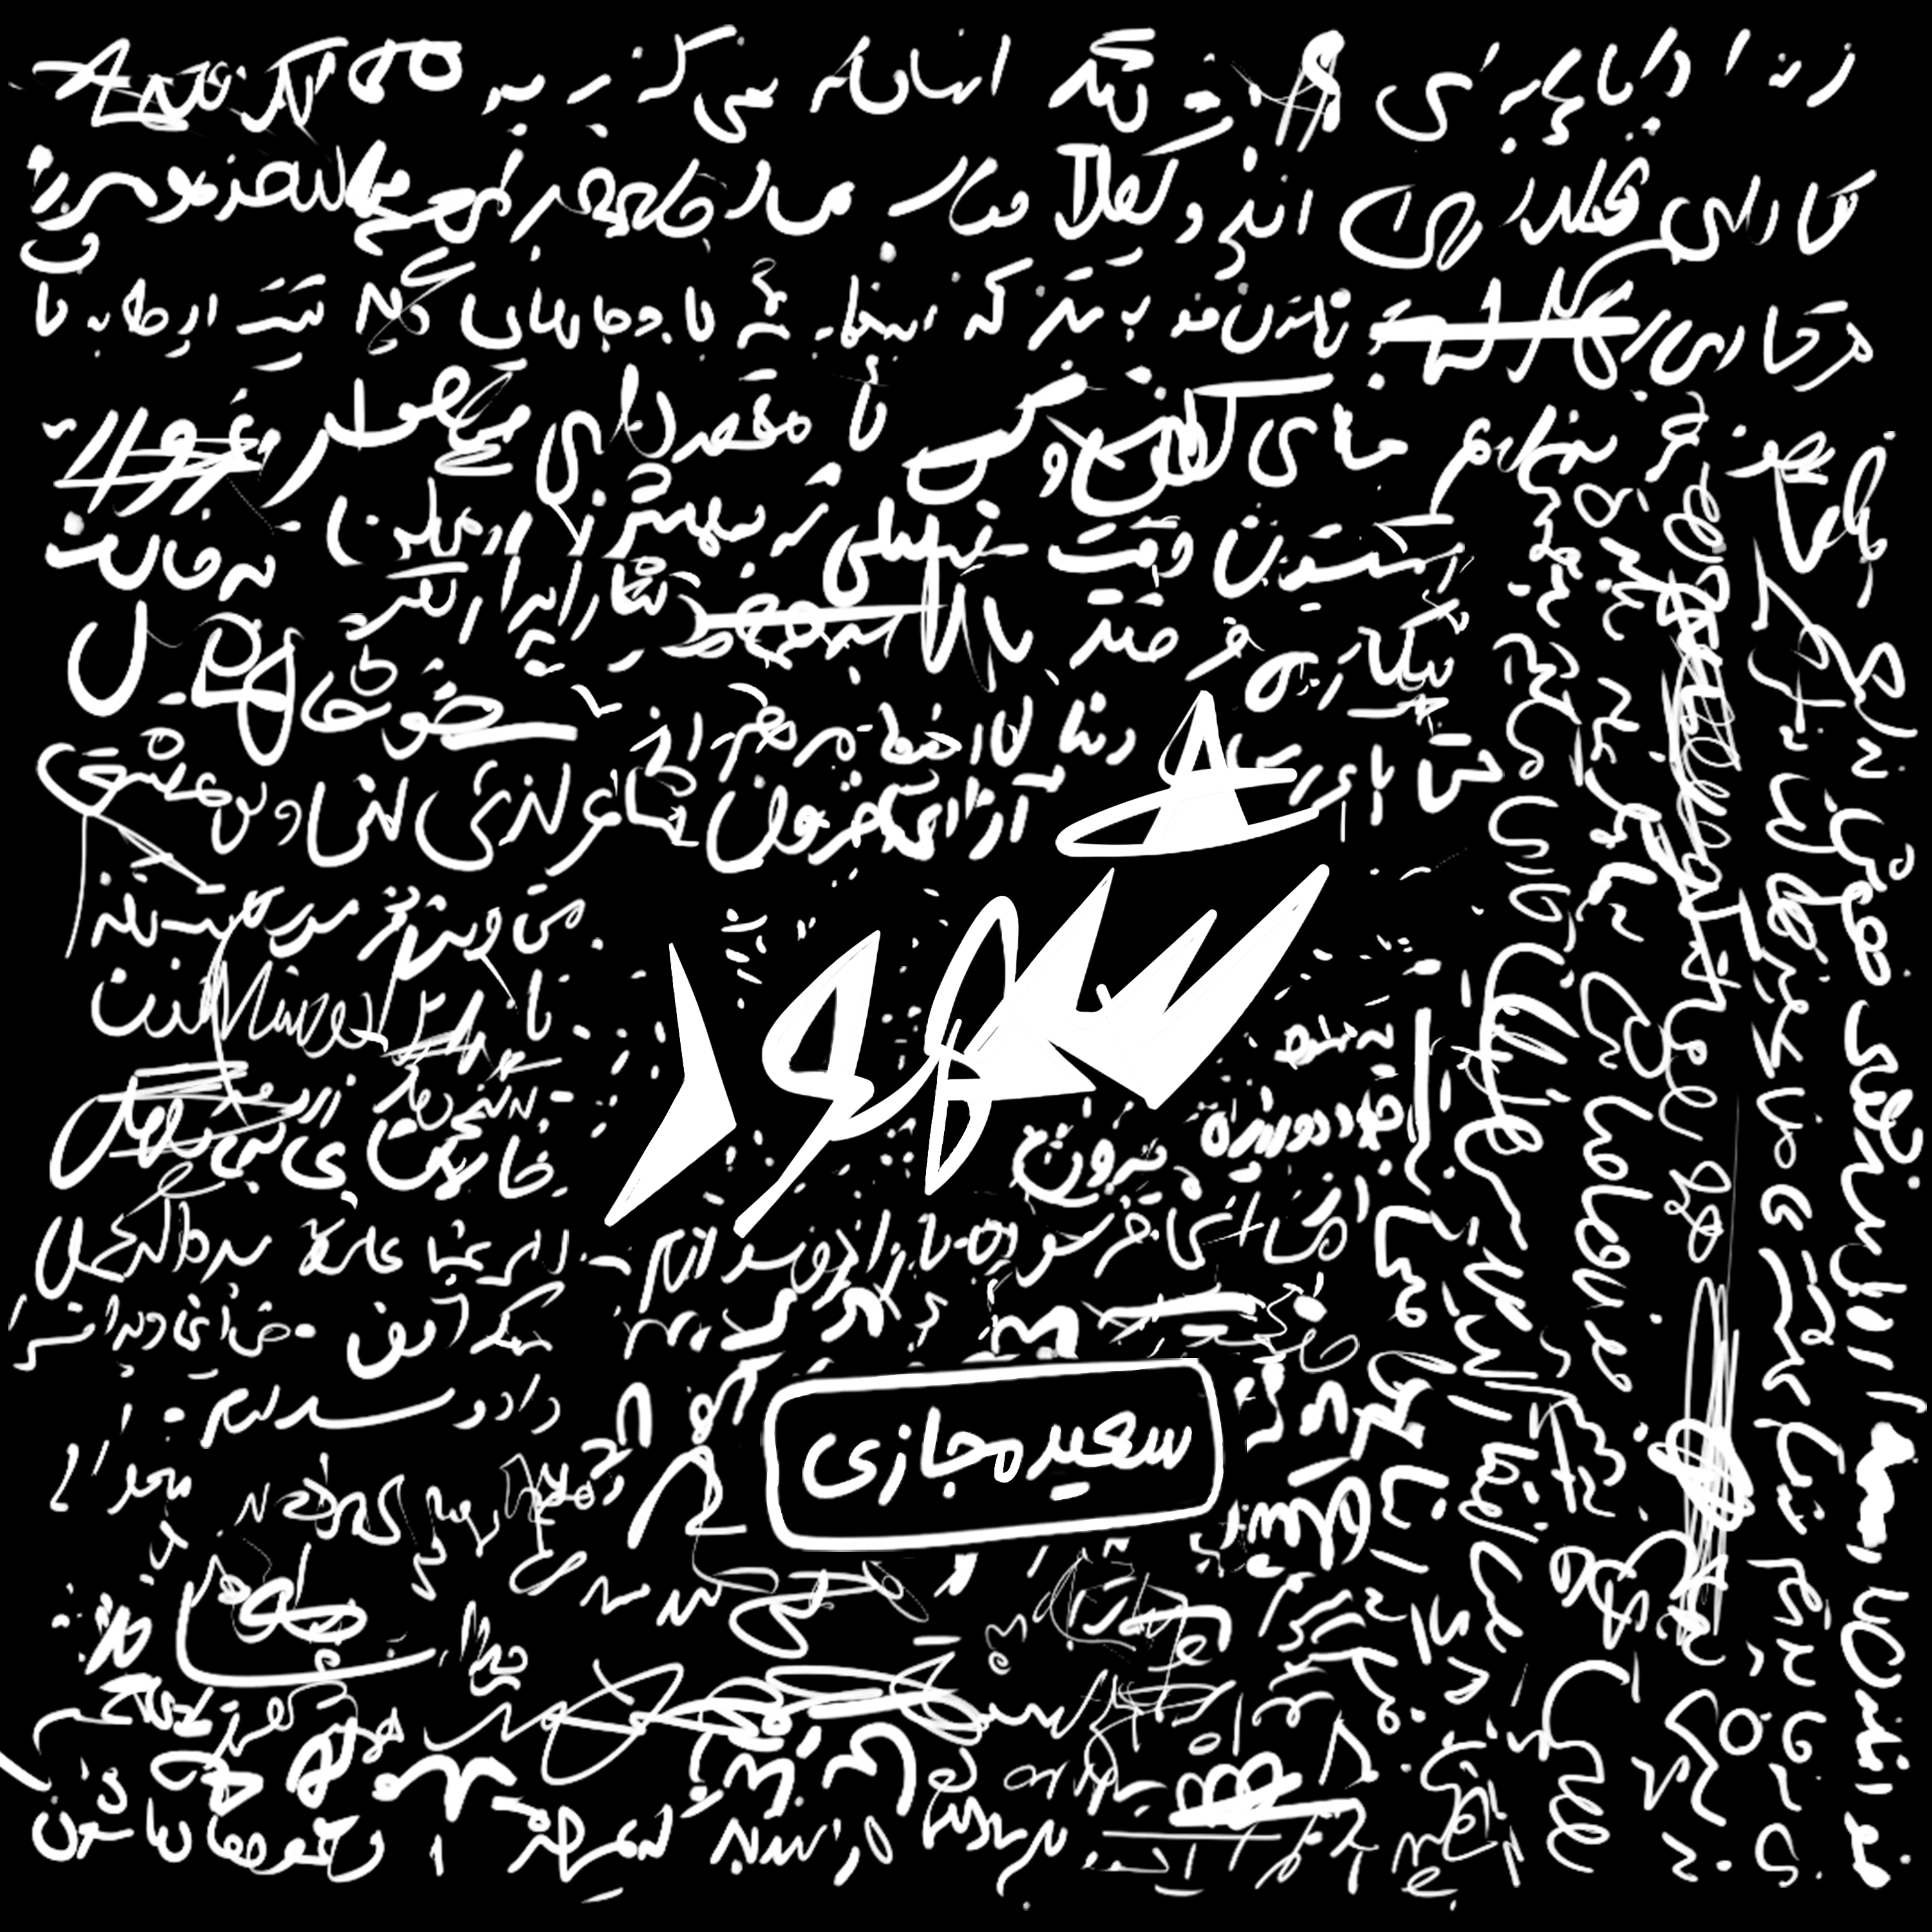  دانلود آهنگ جدید سعید مجازی - روسپی | Download New Music By Saeed Majazi - Roospy